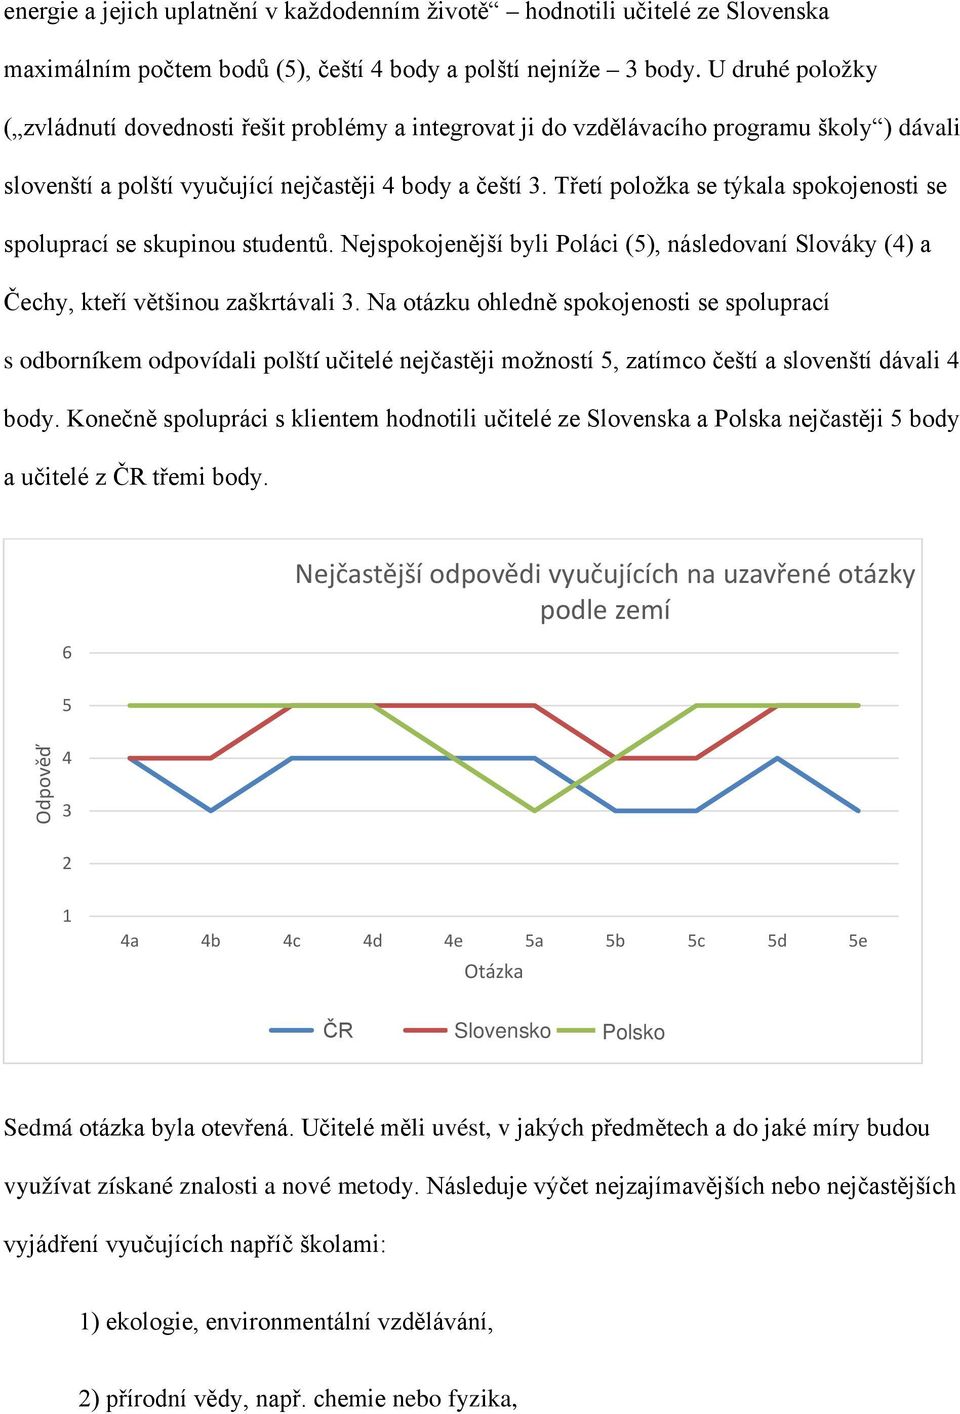 Třetí položka se týkala spokojenosti se spoluprací se skupinou studentů. Nejspokojenější byli Poláci (5), následovaní Slováky (4) a Čechy, kteří většinou zaškrtávali 3.